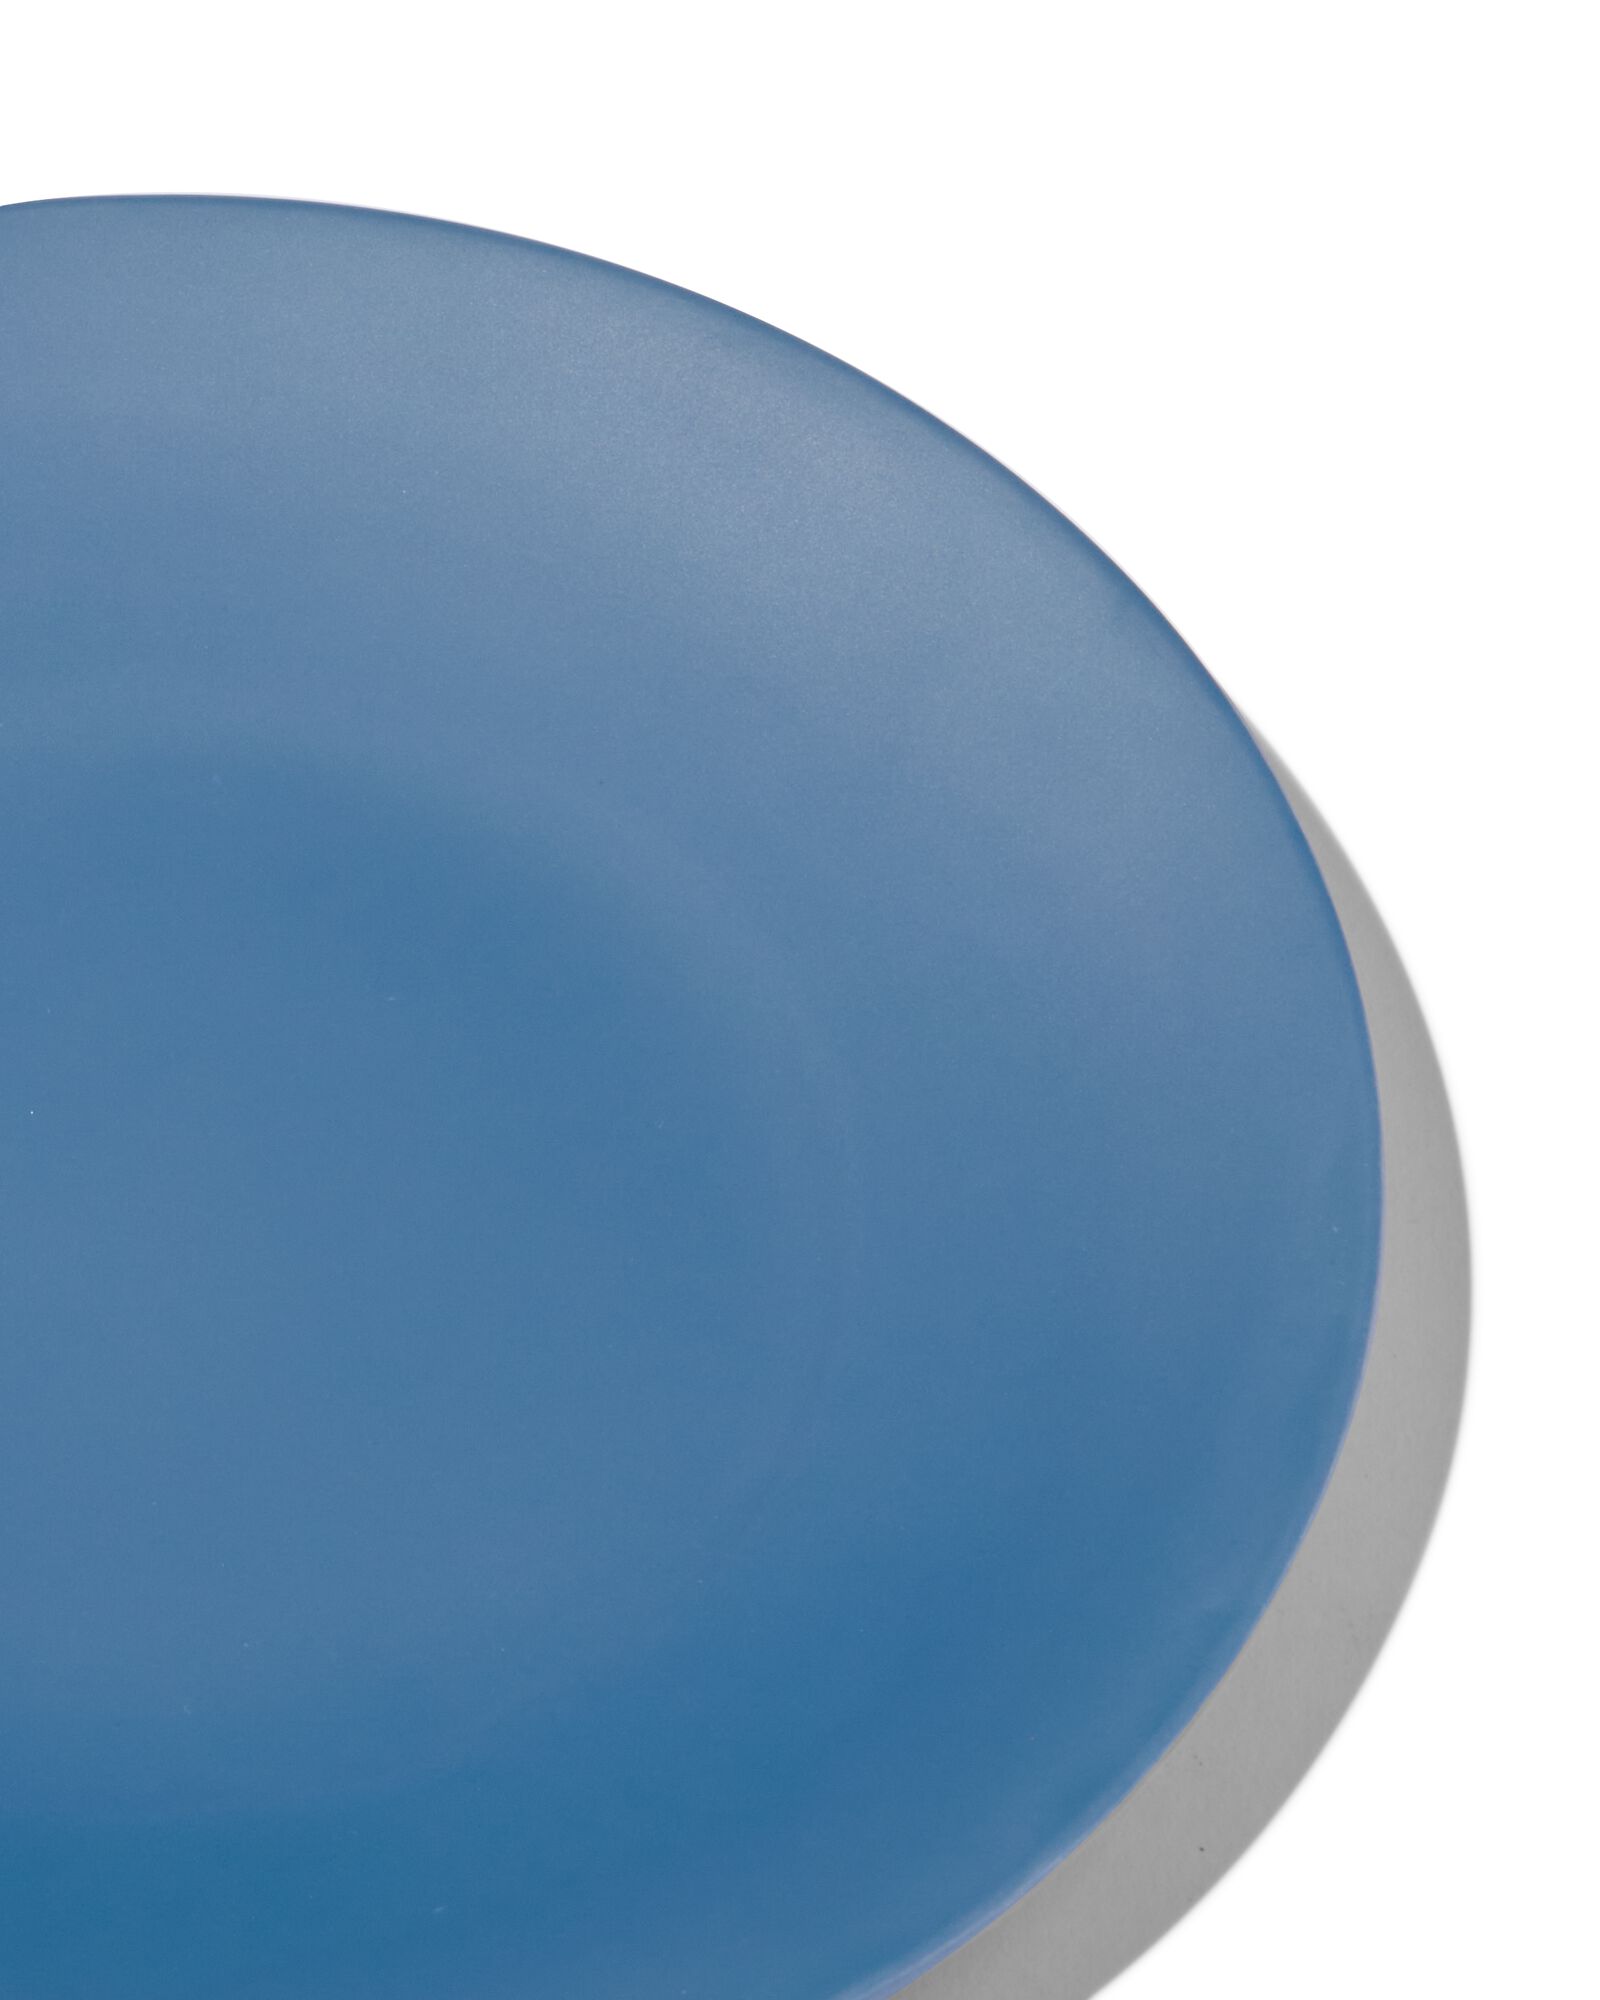 Frühstücksteller, Ø 21.5 cm, Melamin, mattblau - 80660045 - HEMA